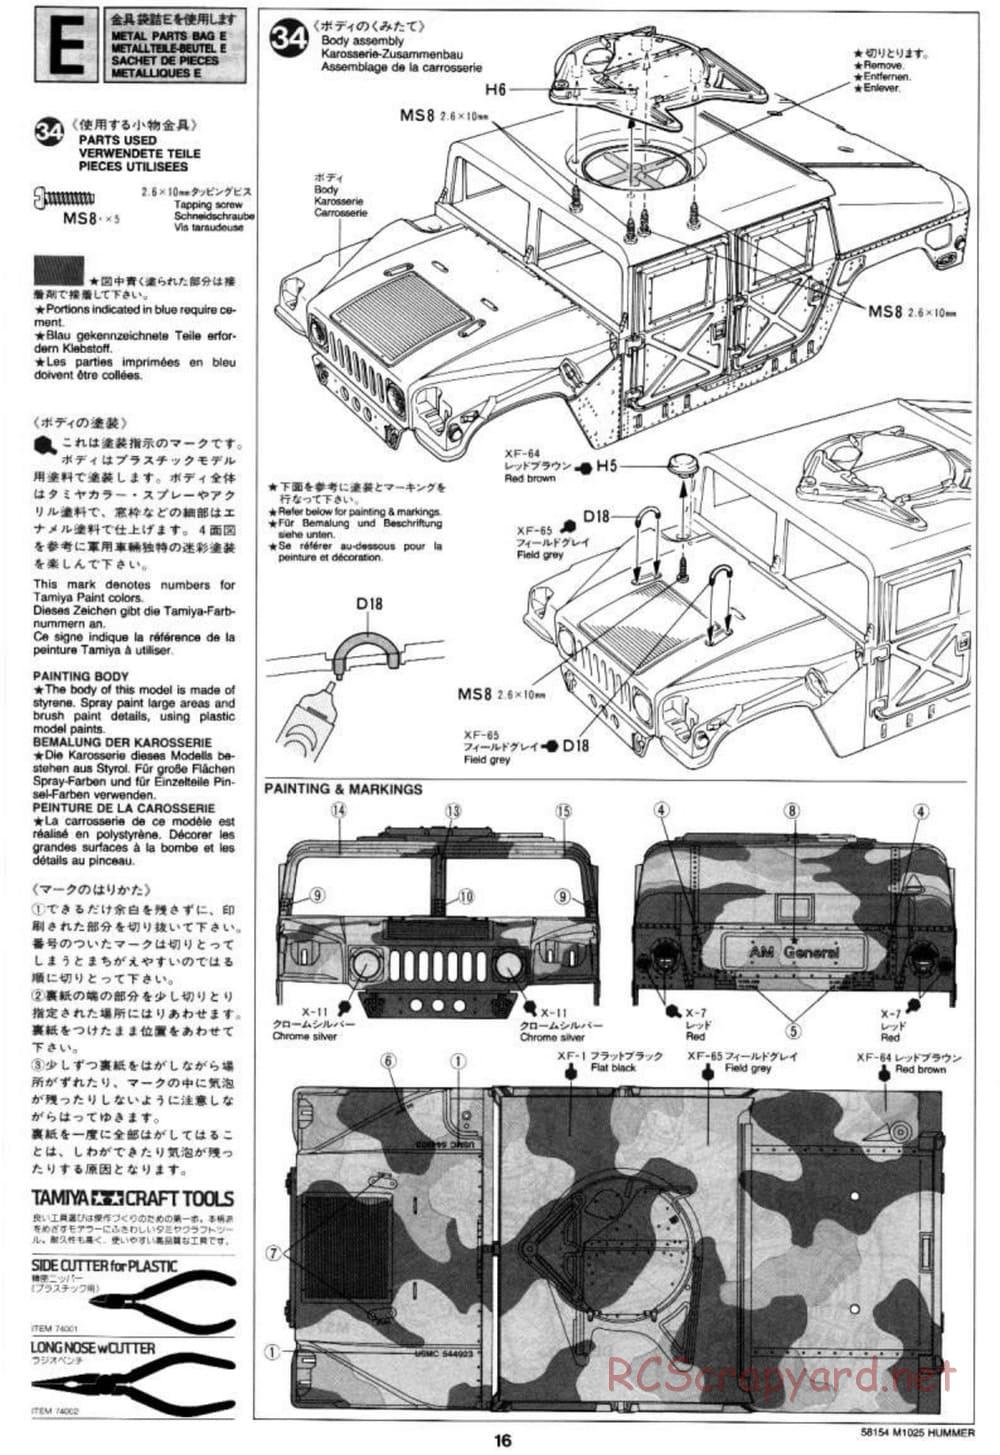 Tamiya - M1025 Hummer - TA-01 Chassis - Manual - Page 16